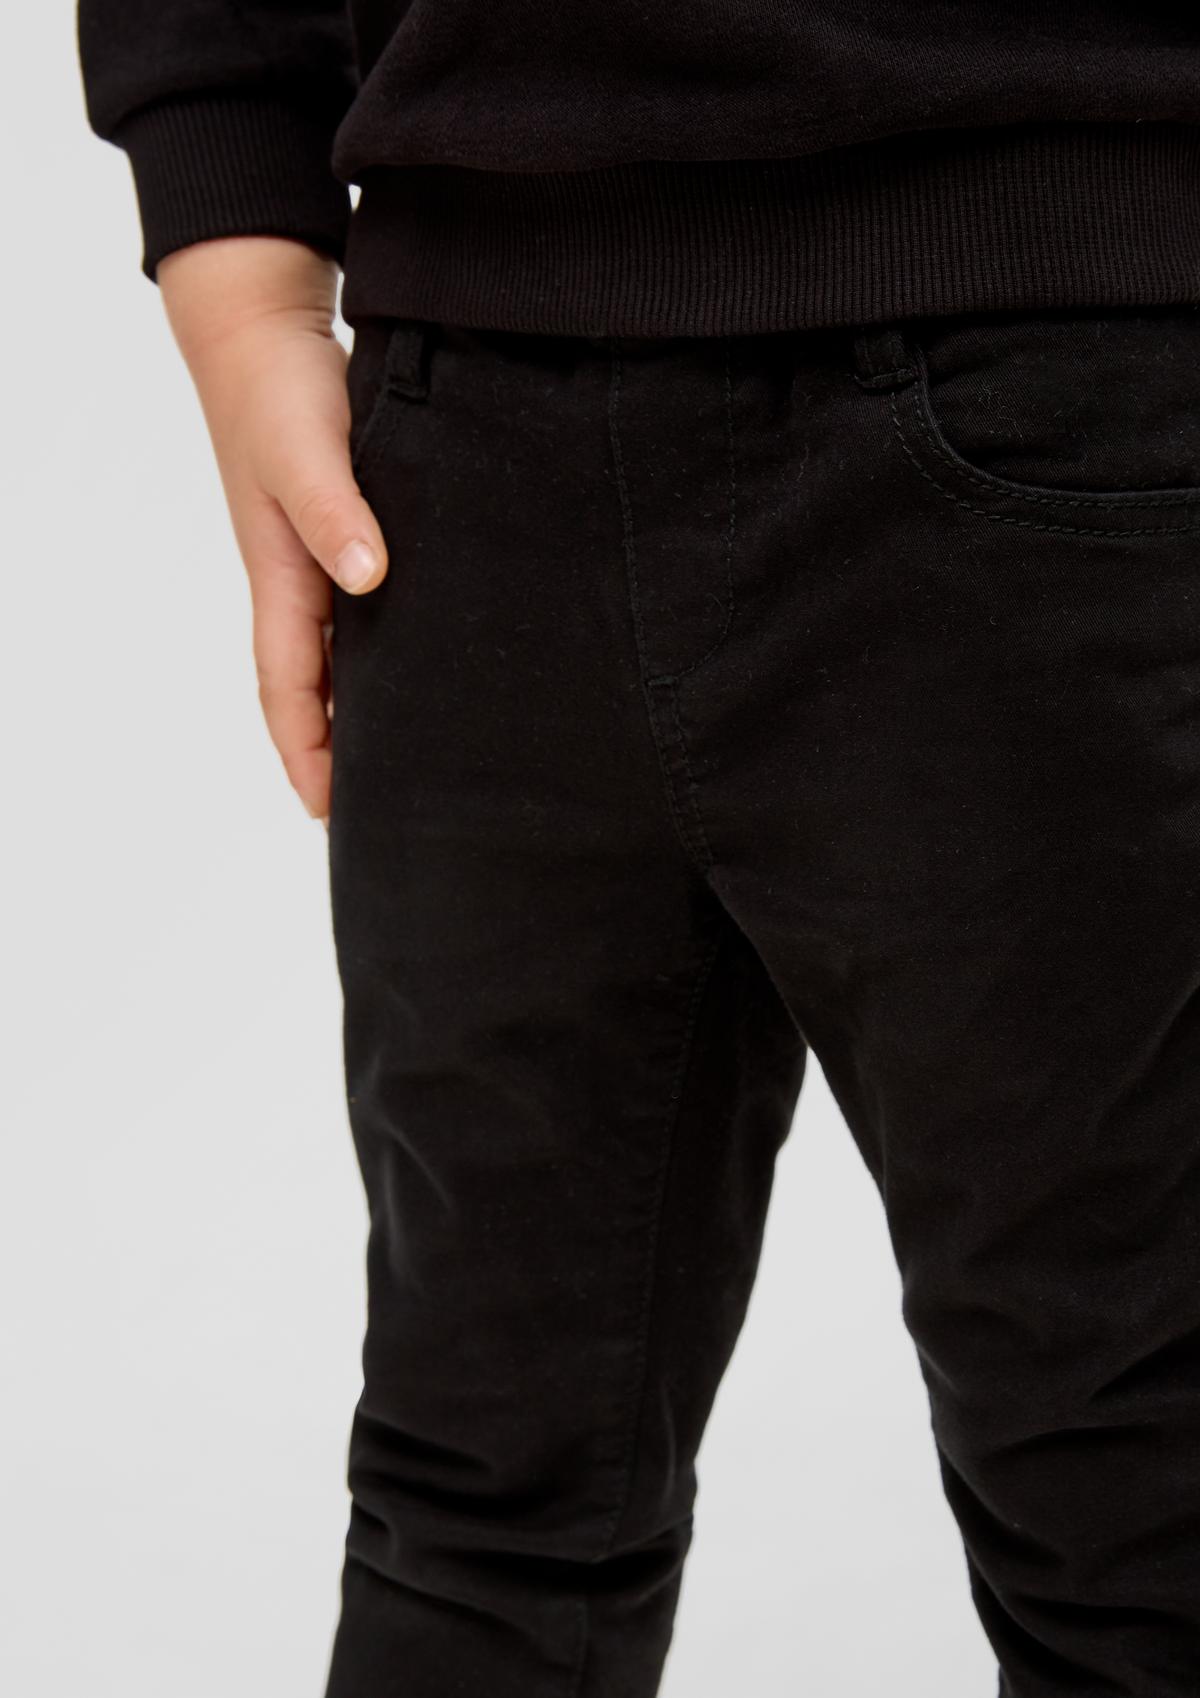 s.Oliver Pelle: keprové kalhoty ve stylu joggingových kalhot